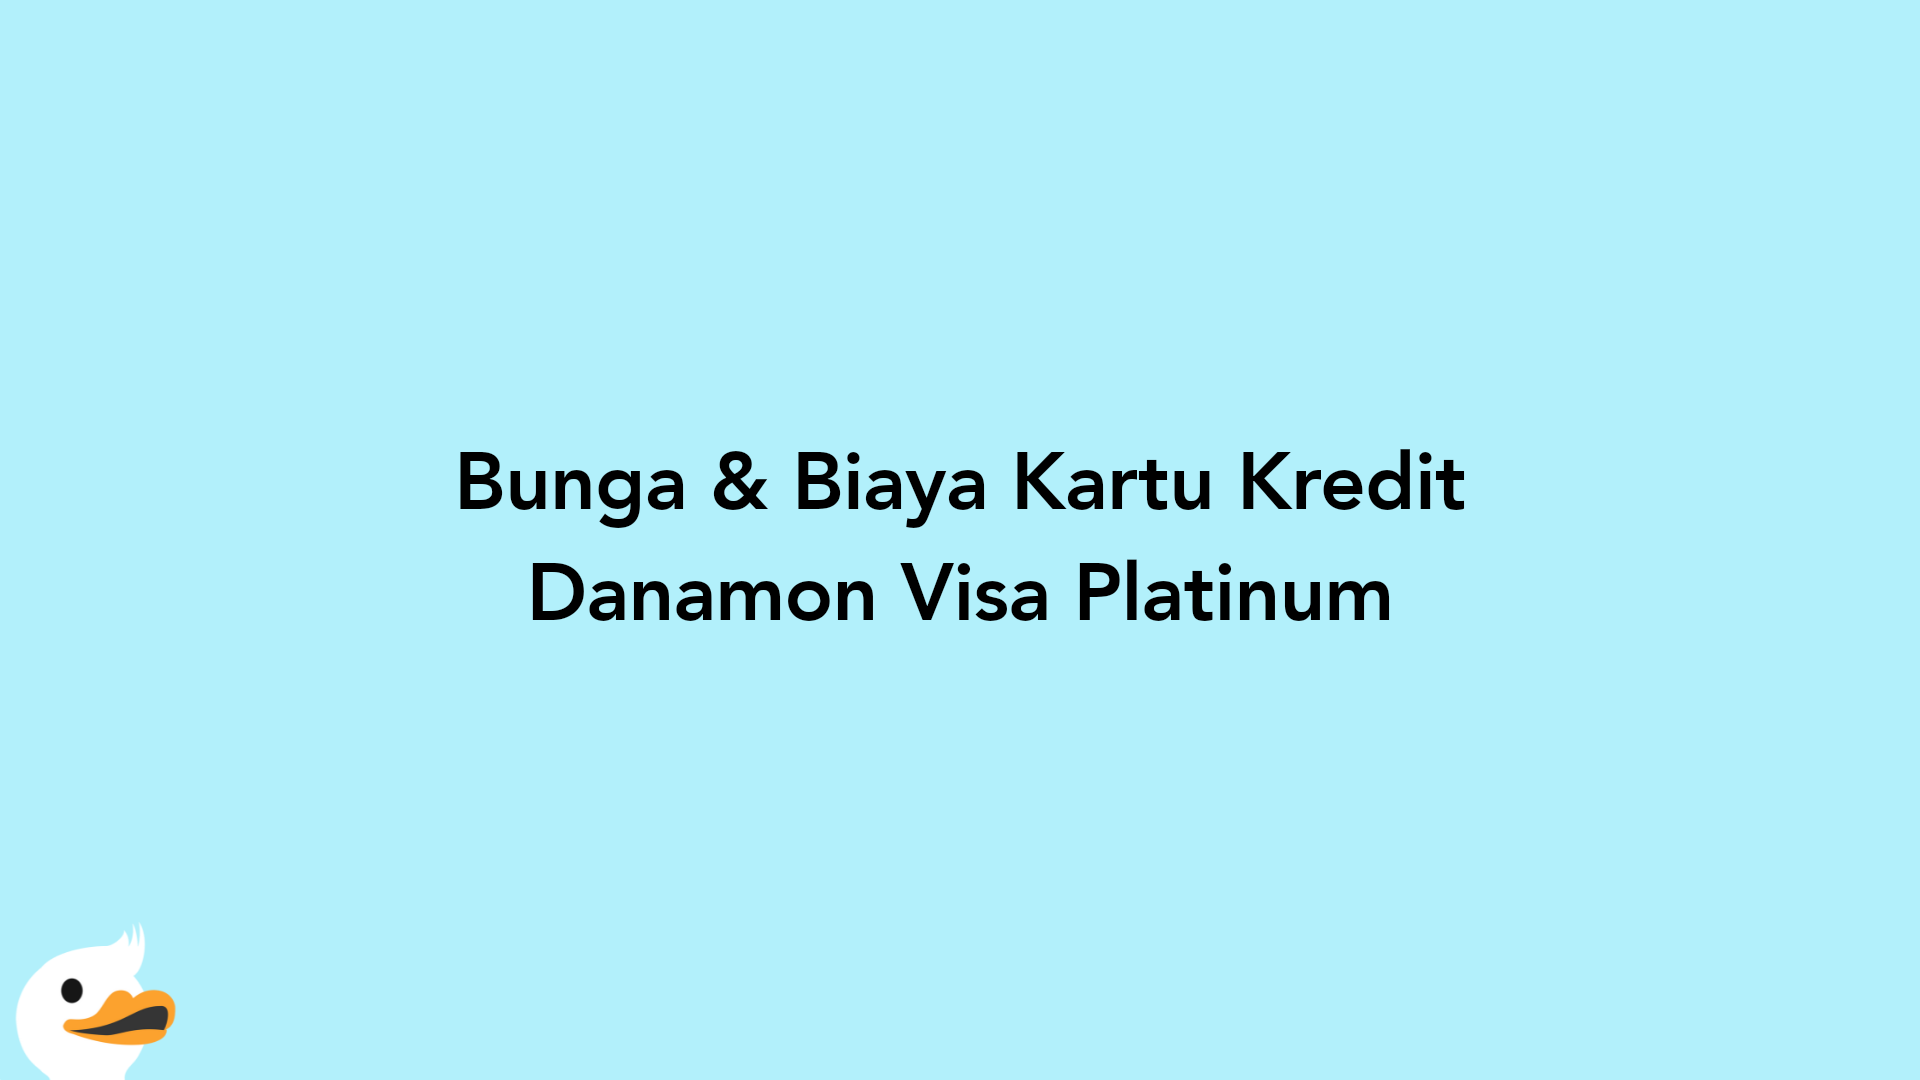 Bunga & Biaya Kartu Kredit Danamon Visa Platinum